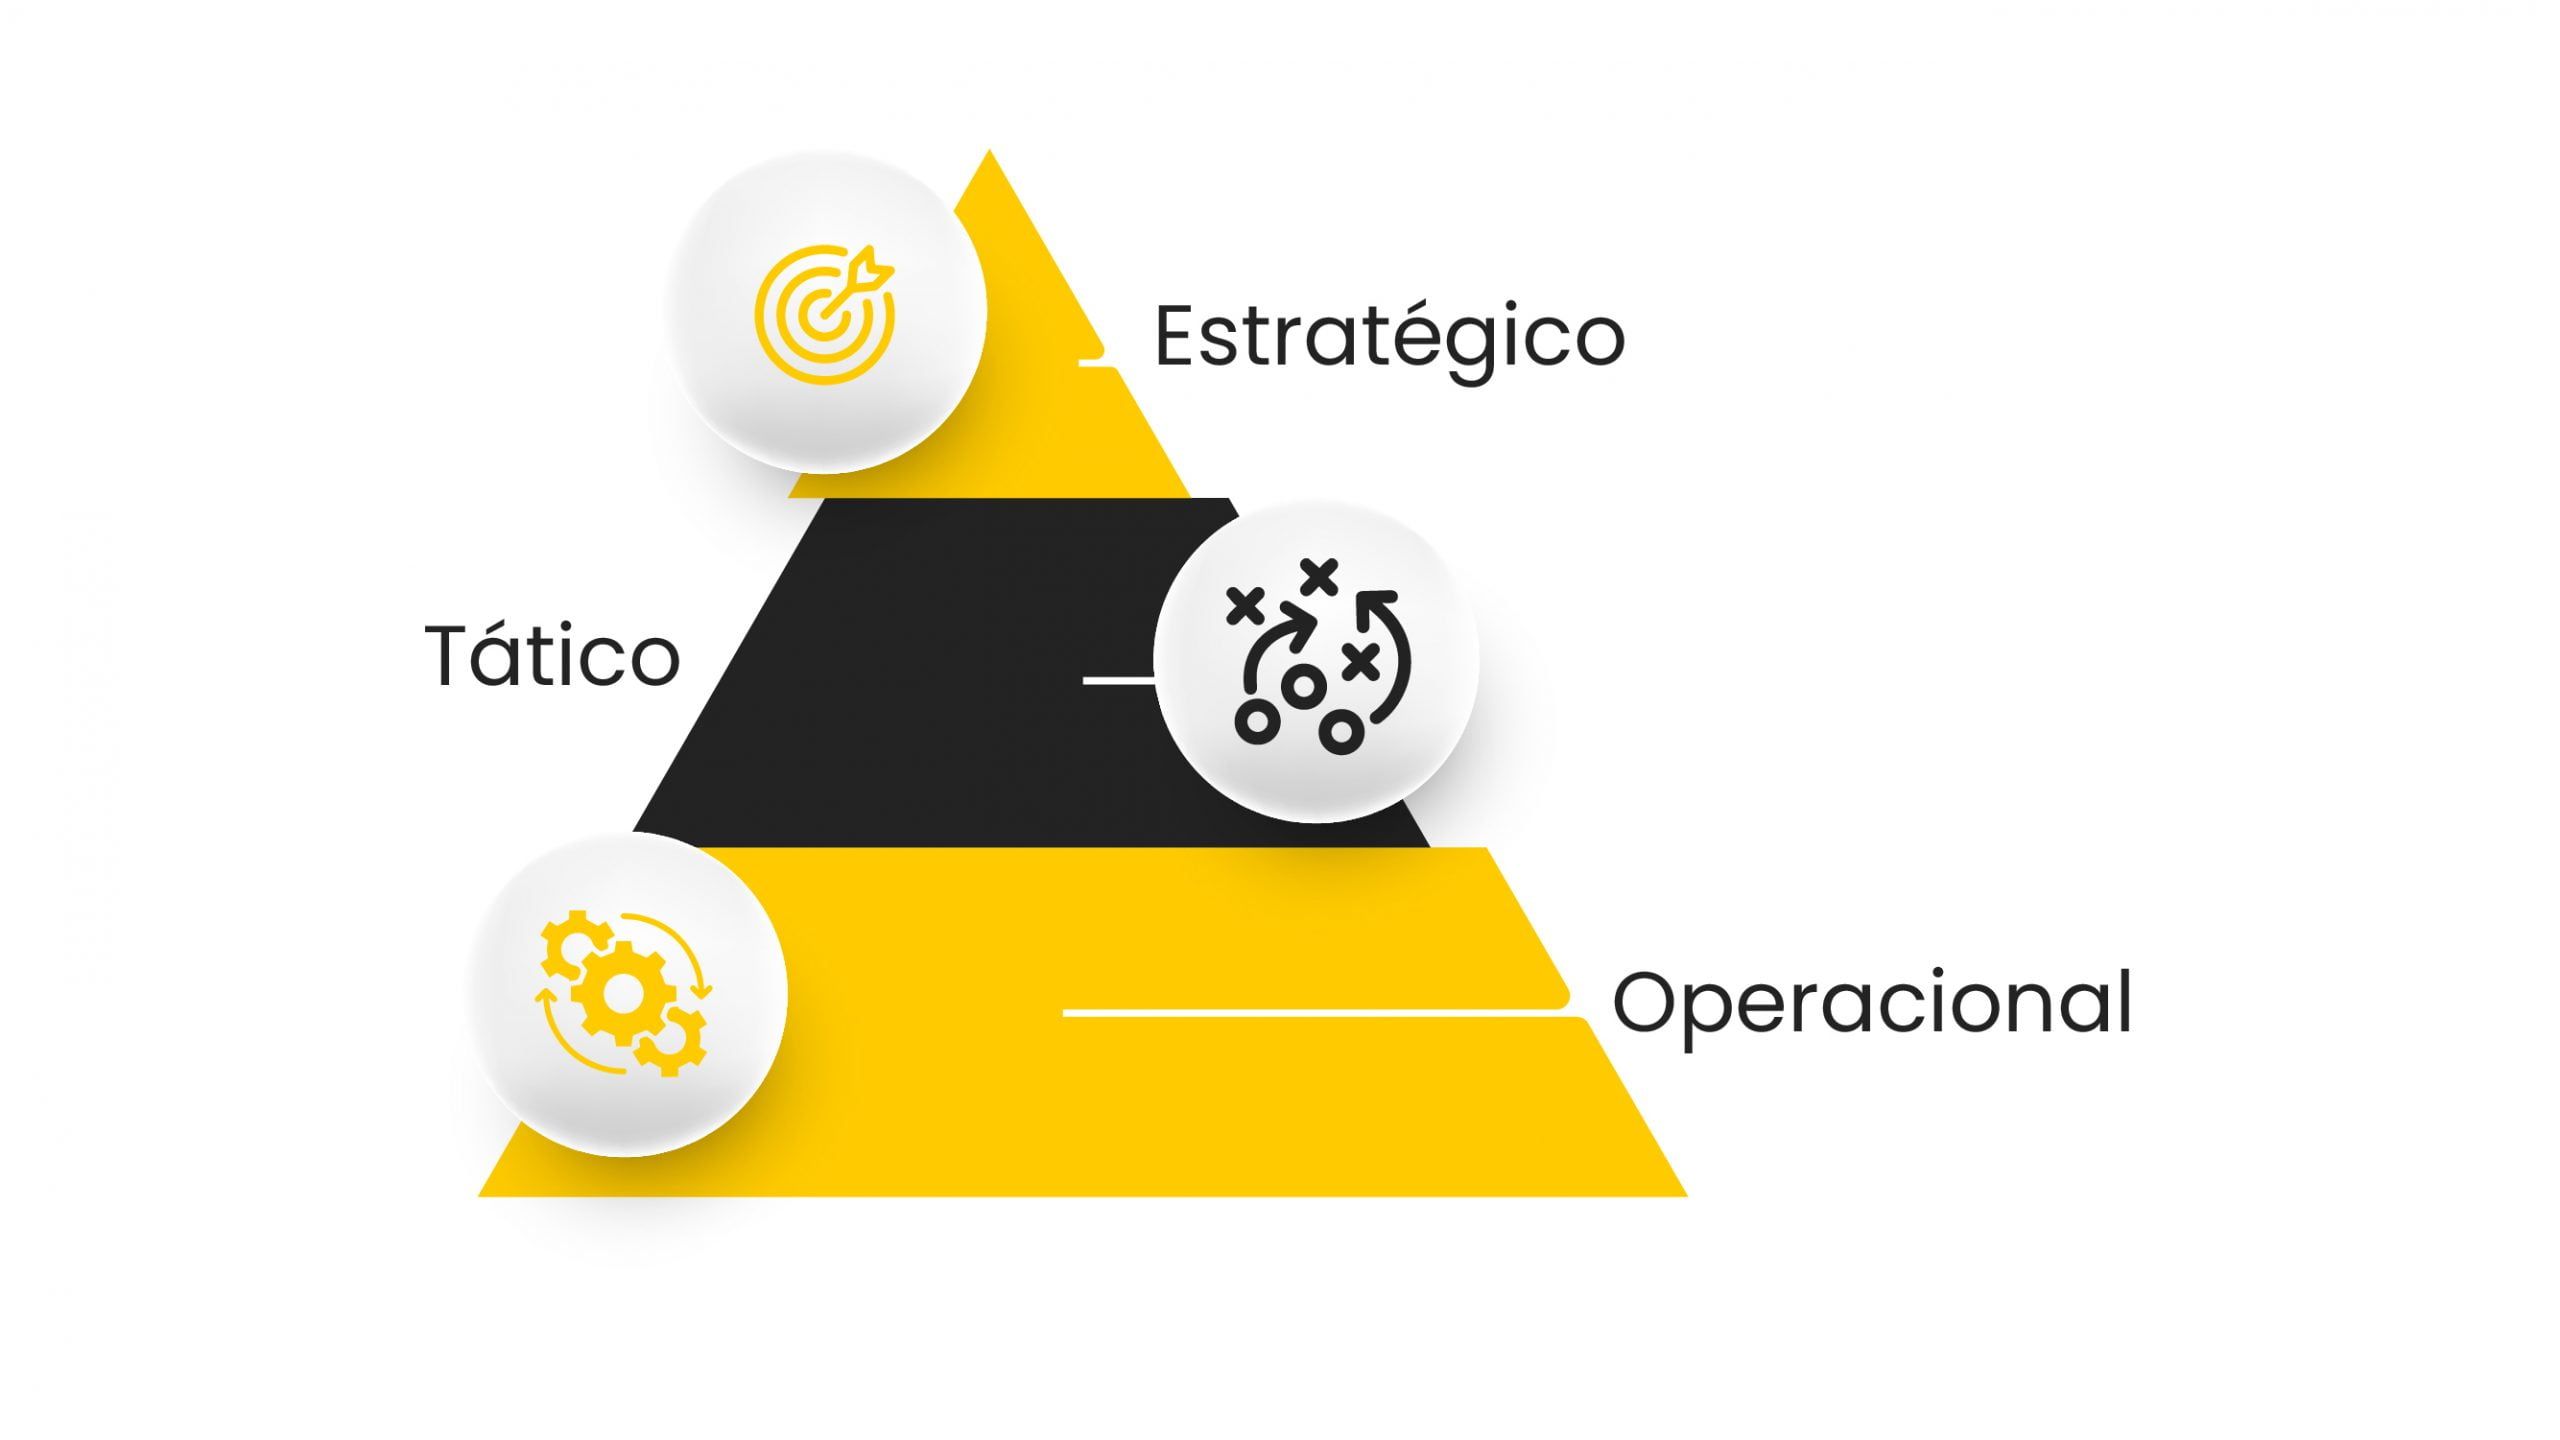 Pirâmide dos tipos de planejamentos de marketing: Estratégico, Tático e Operacional. 